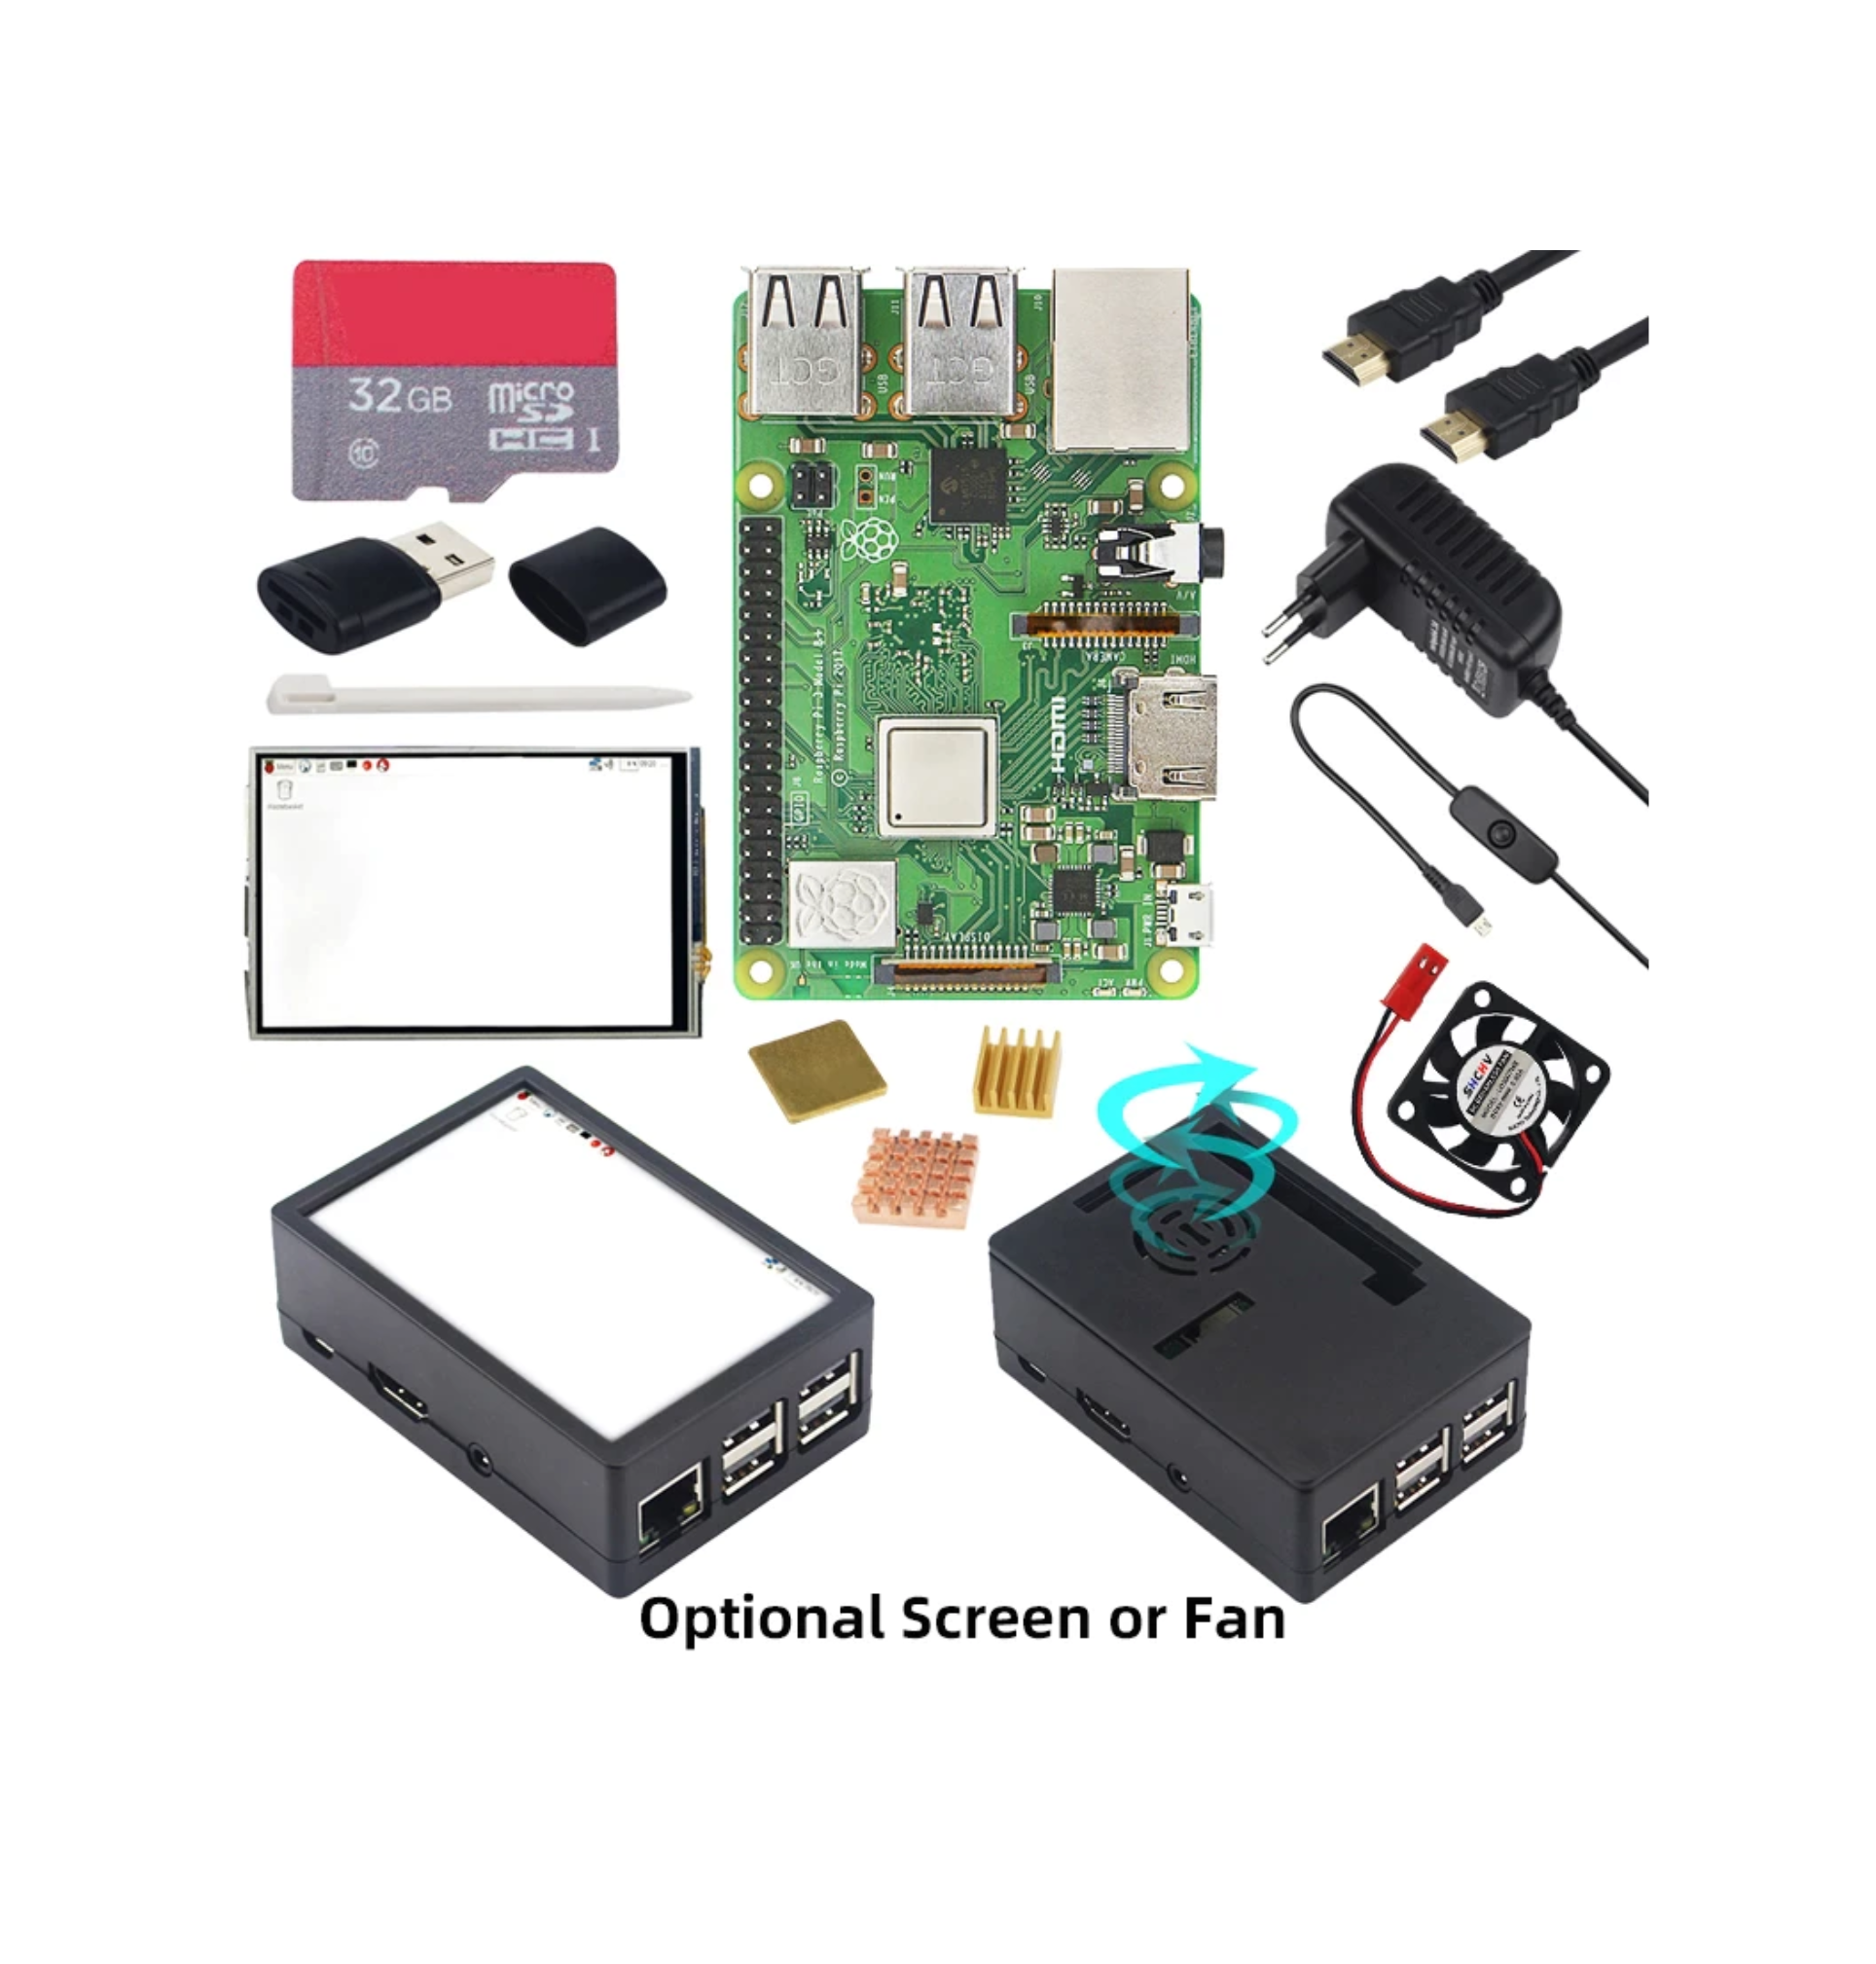 Raspberry Pi 3 Model B and Kits